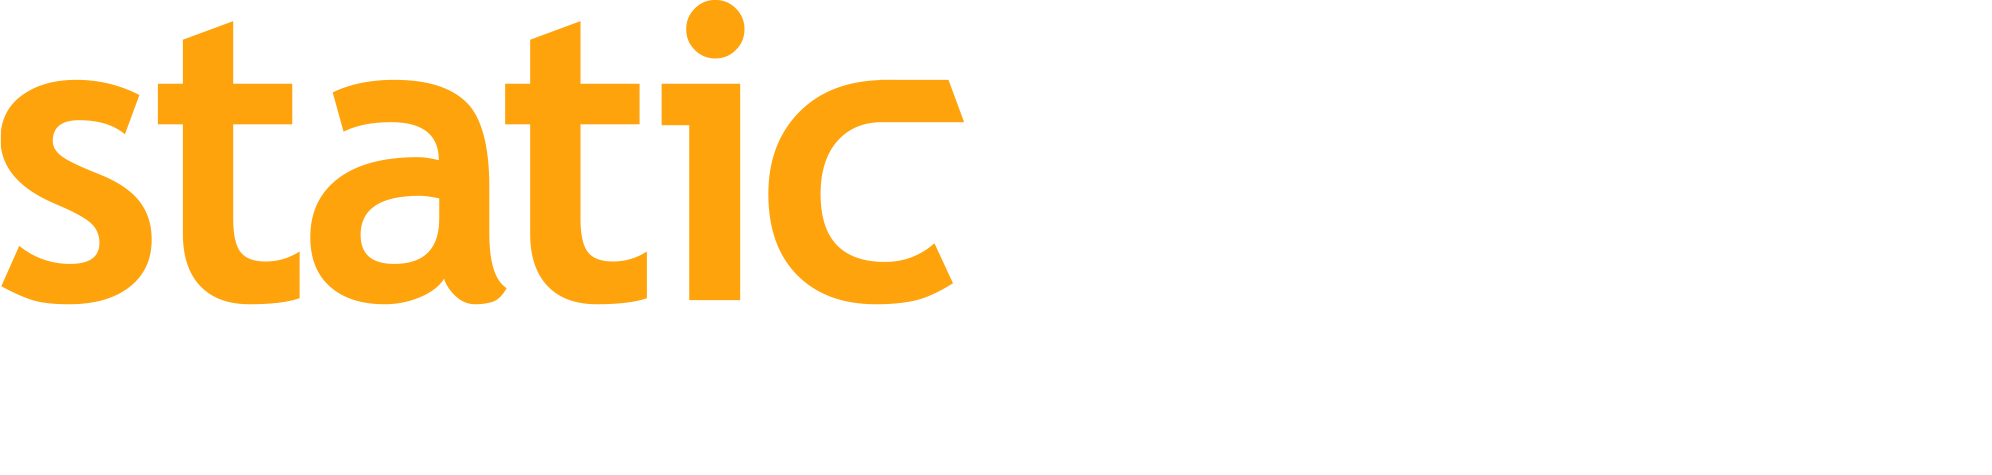 staticworx logo